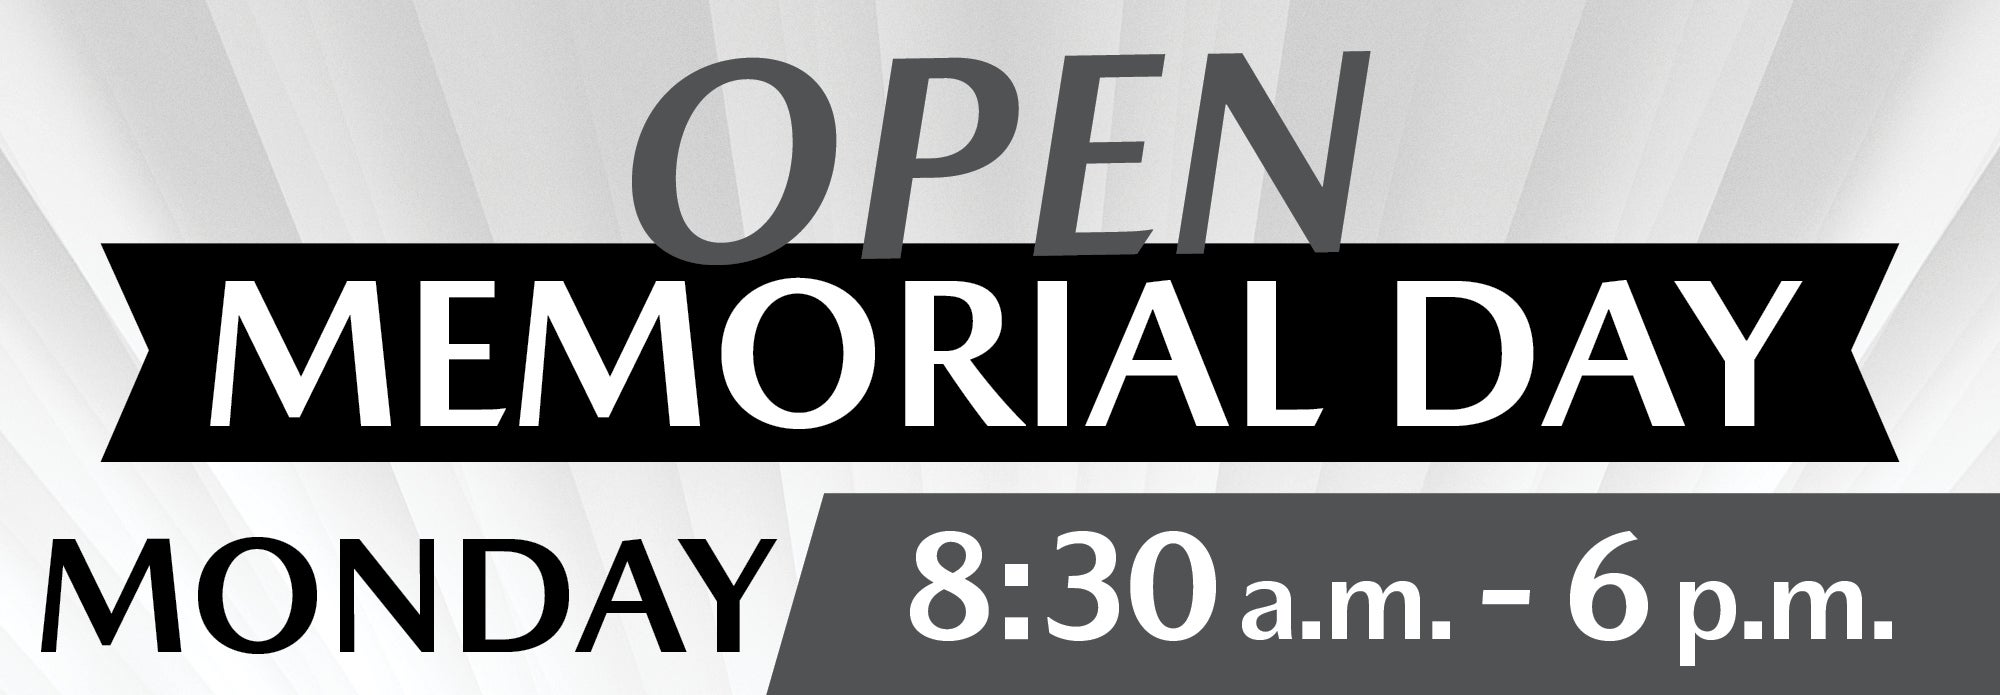 Open Memorial Day 